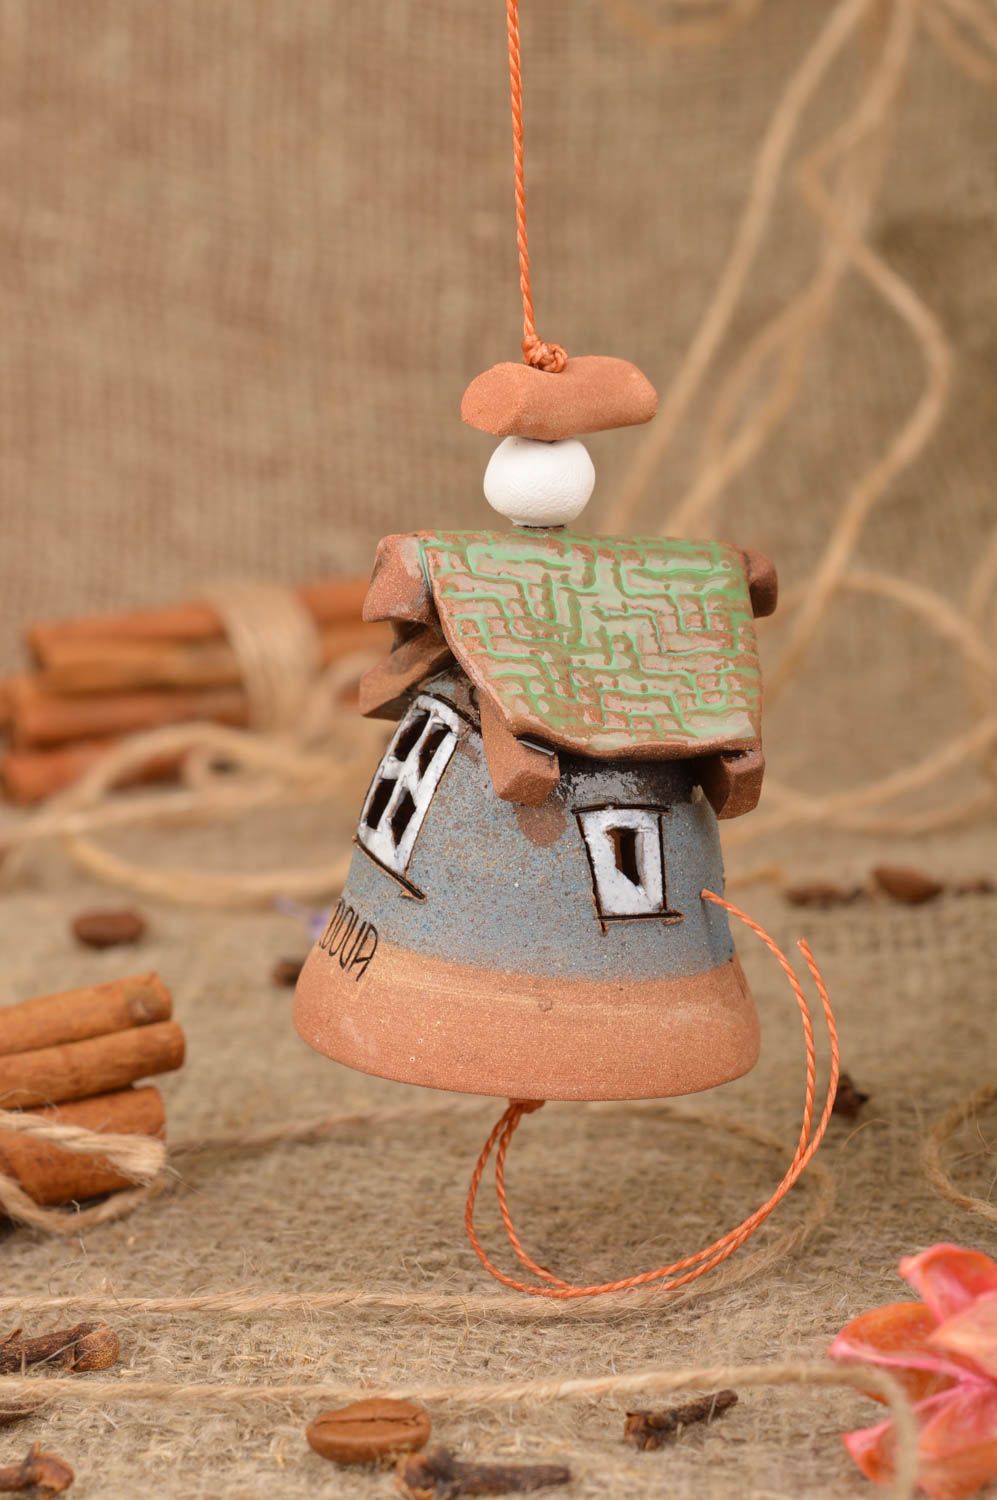 Глиняный колокольчик расписанный глазурью ручной работы в виде красивого домика  фото 1